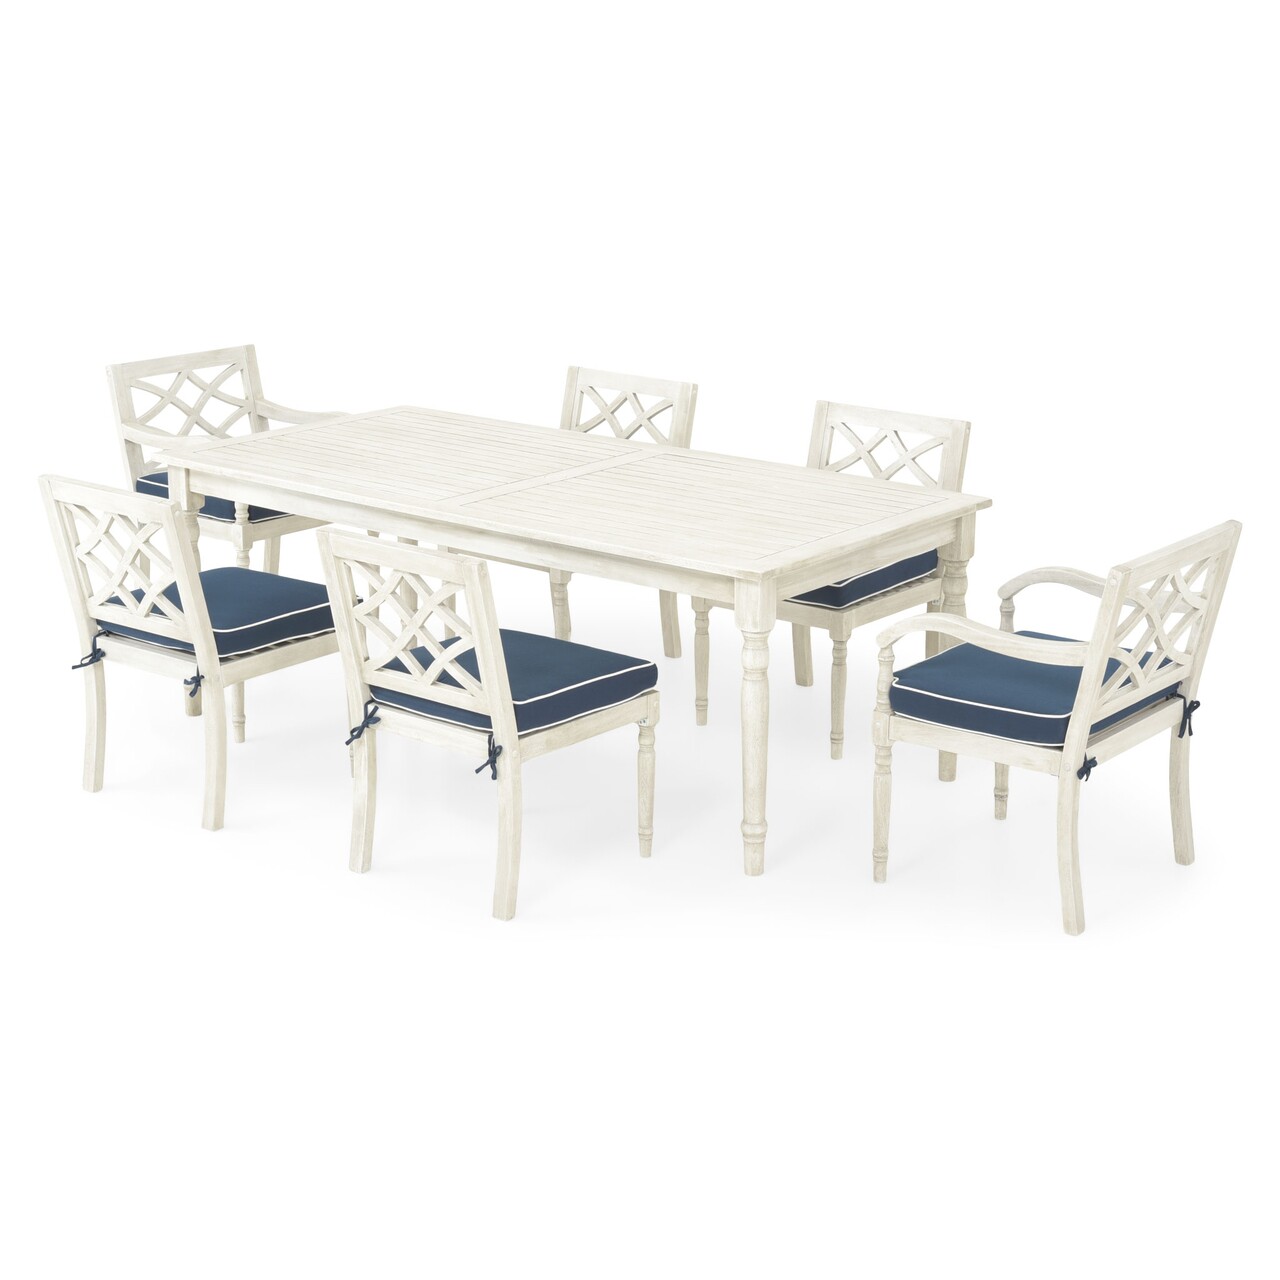 Maison marie 4 db szék kar nélkül, 2 db szék karral és asztal, lemn, fehér/kék